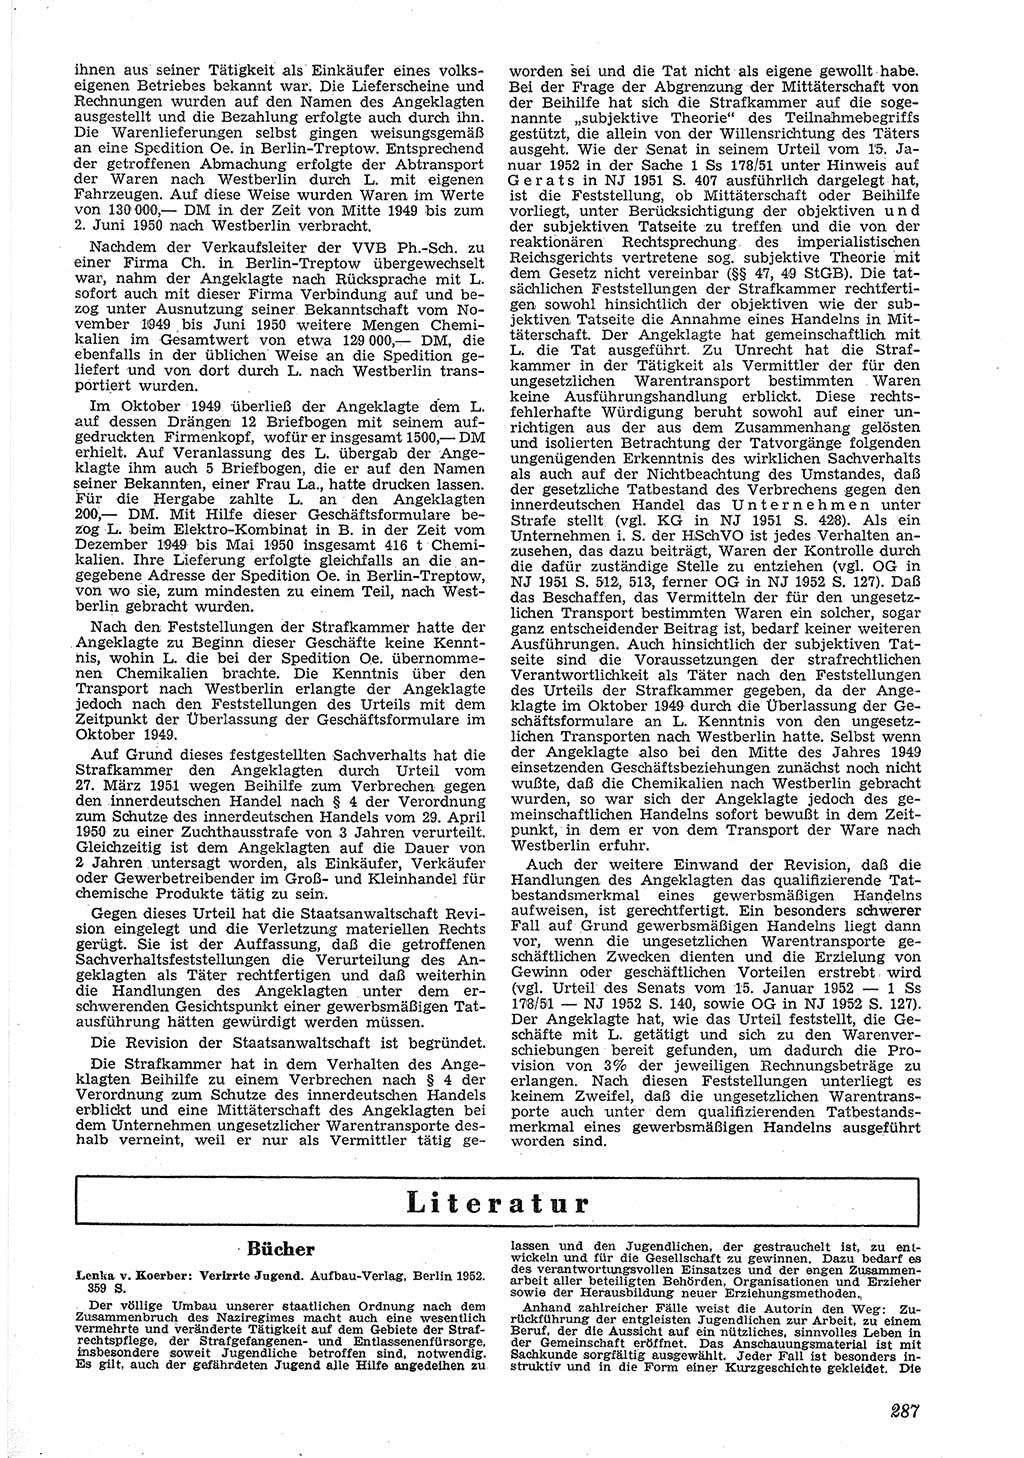 Neue Justiz (NJ), Zeitschrift für Recht und Rechtswissenschaft [Deutsche Demokratische Republik (DDR)], 6. Jahrgang 1952, Seite 287 (NJ DDR 1952, S. 287)